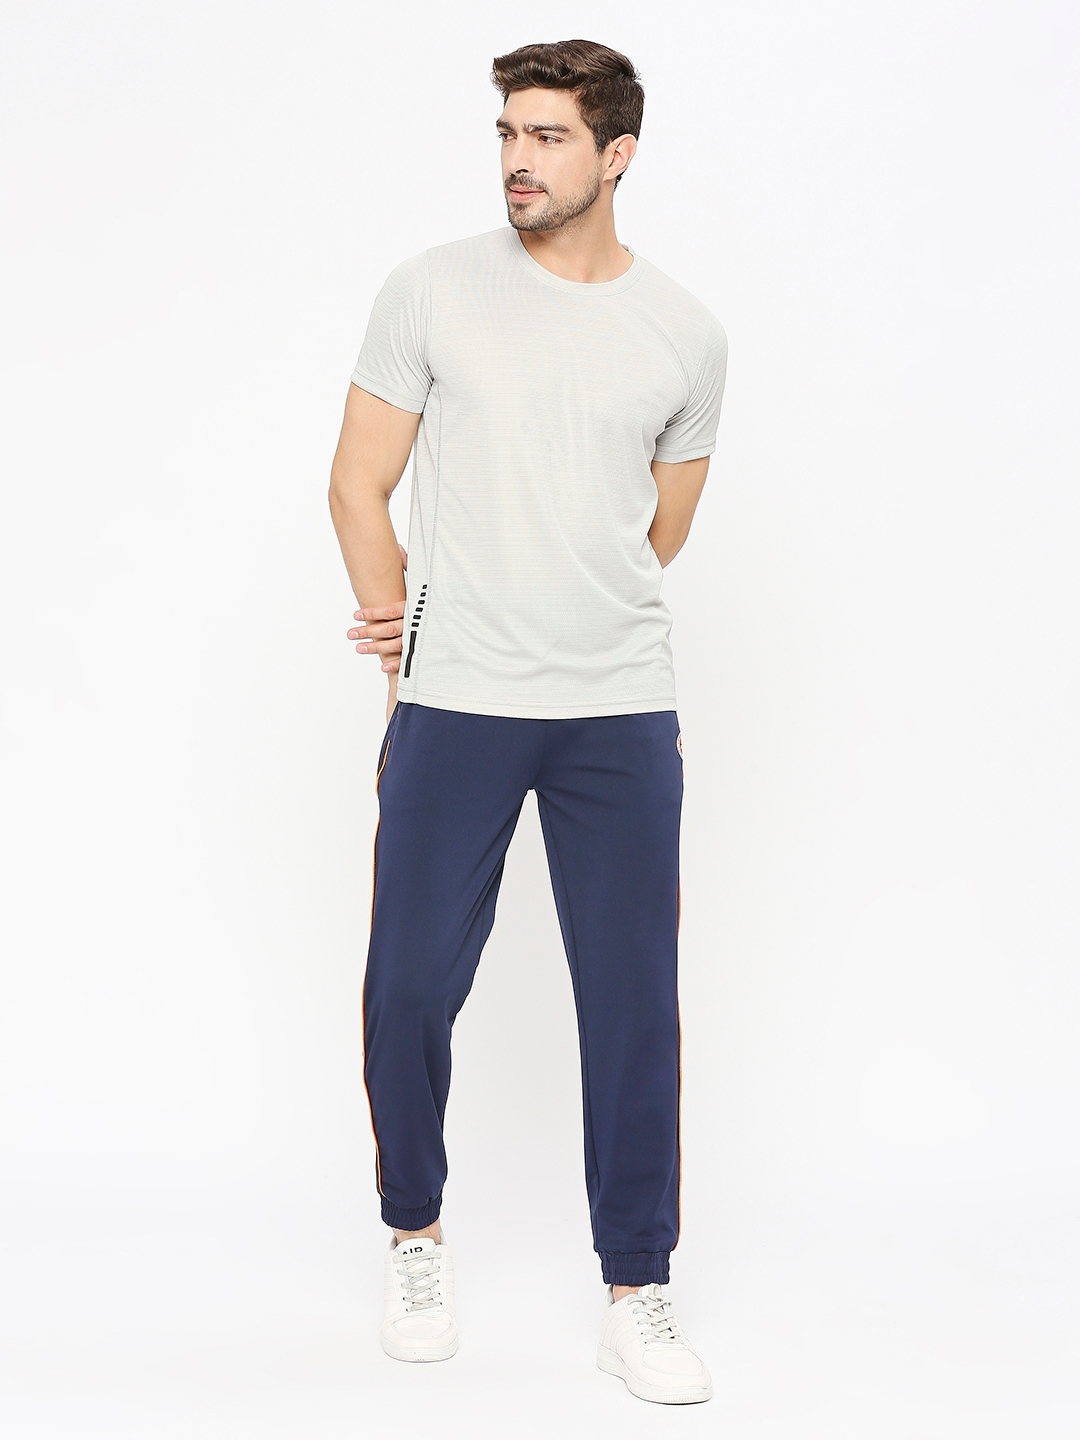 FITZ | Men's Slim Fit Blue Cotton Blend Casual Joogers 5